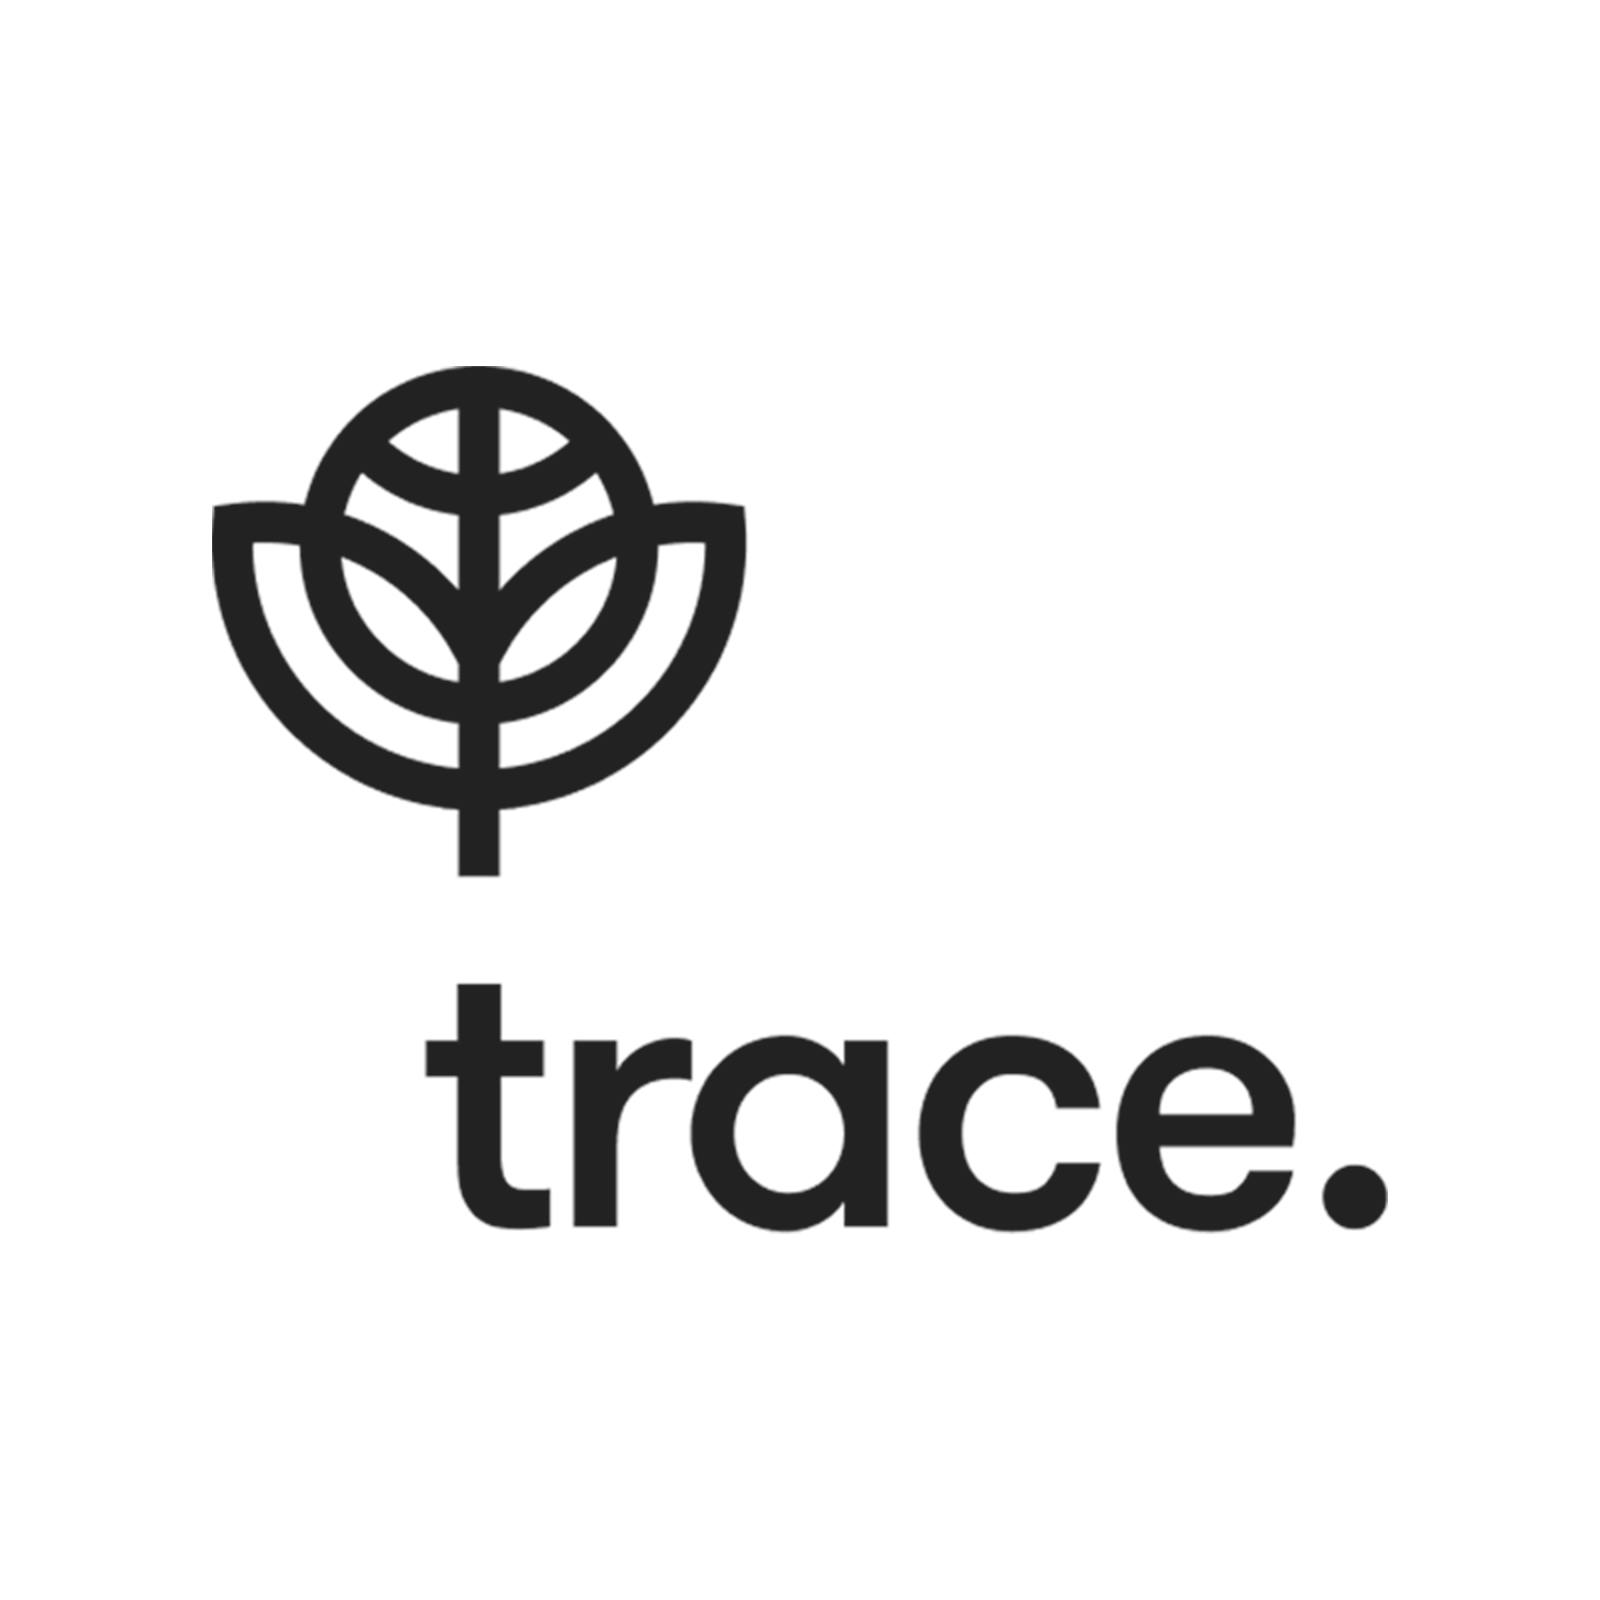 Trace logo